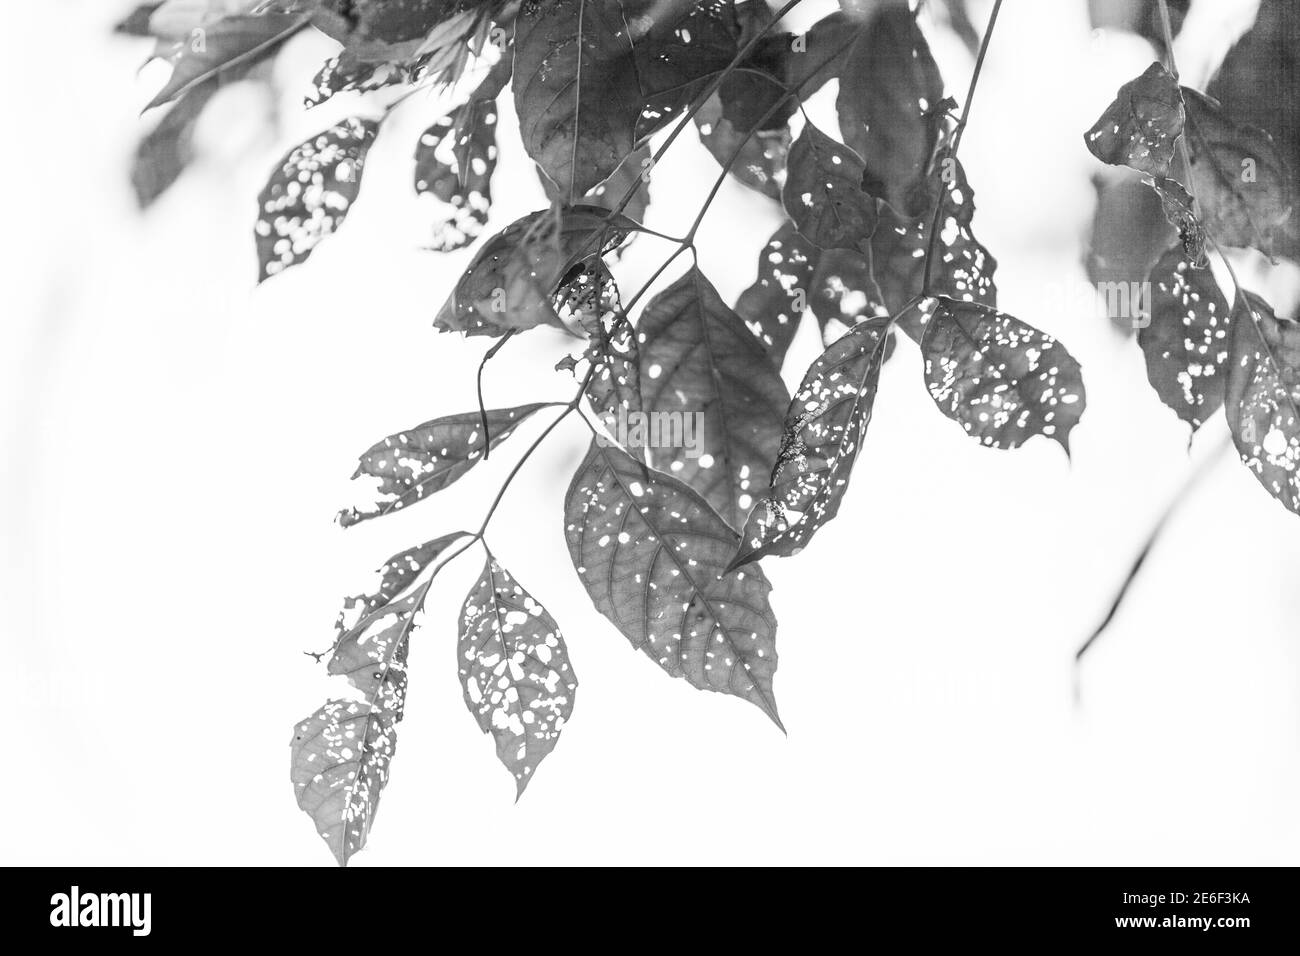 Foglia bianca e nera con buchi, mangiata dai parassiti, natura Foto Stock